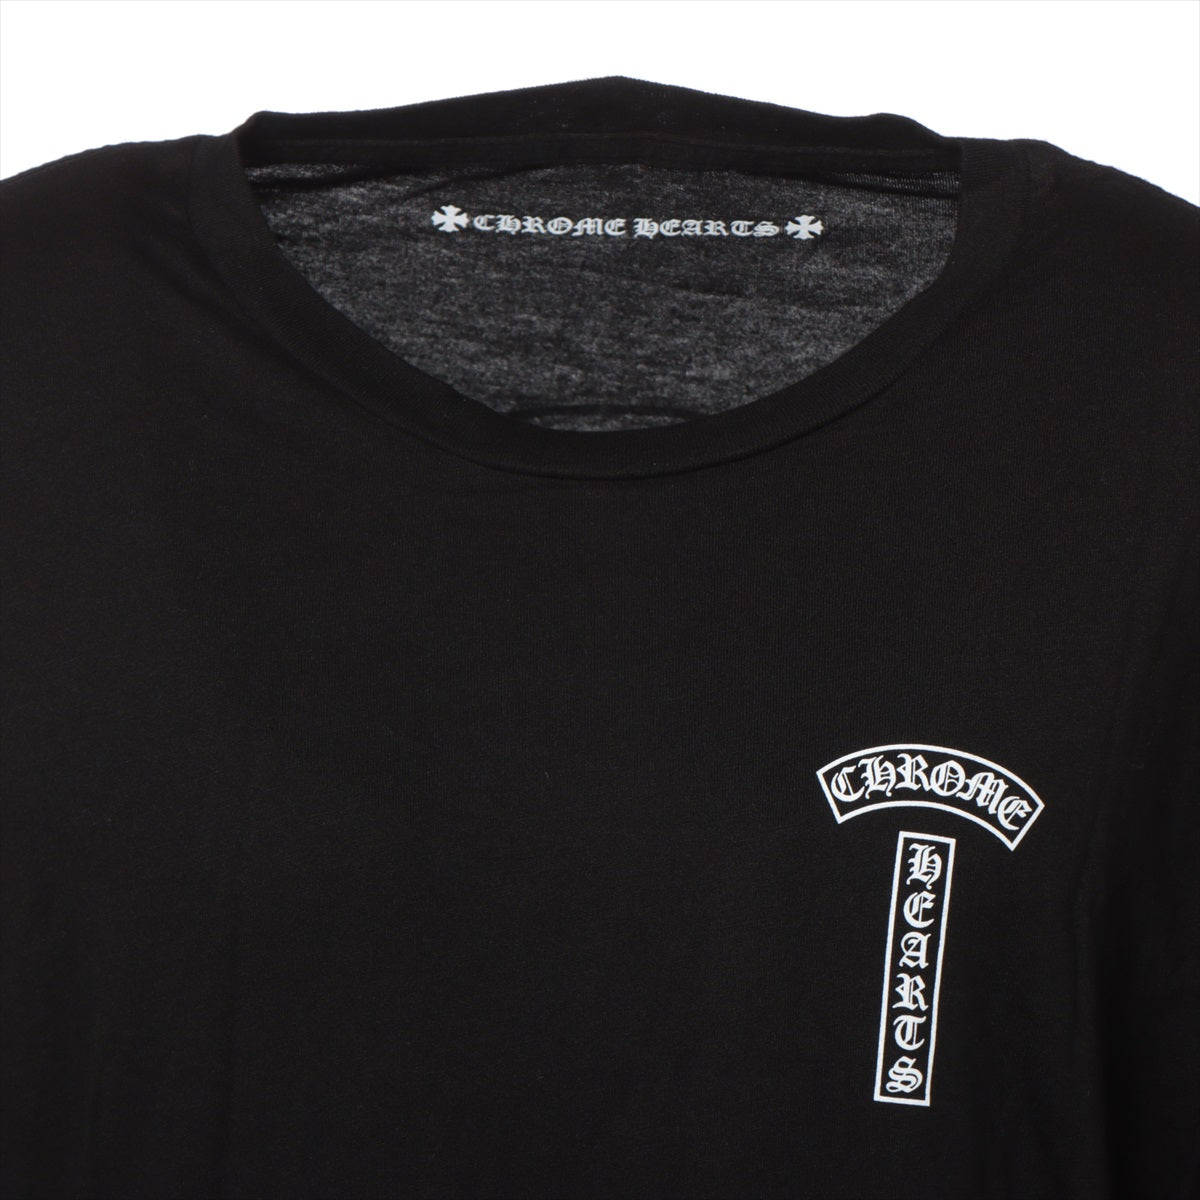 クロムハーツ ロングTシャツ コットン×レーヨン サイズL ブラック 袖フローラルクロス